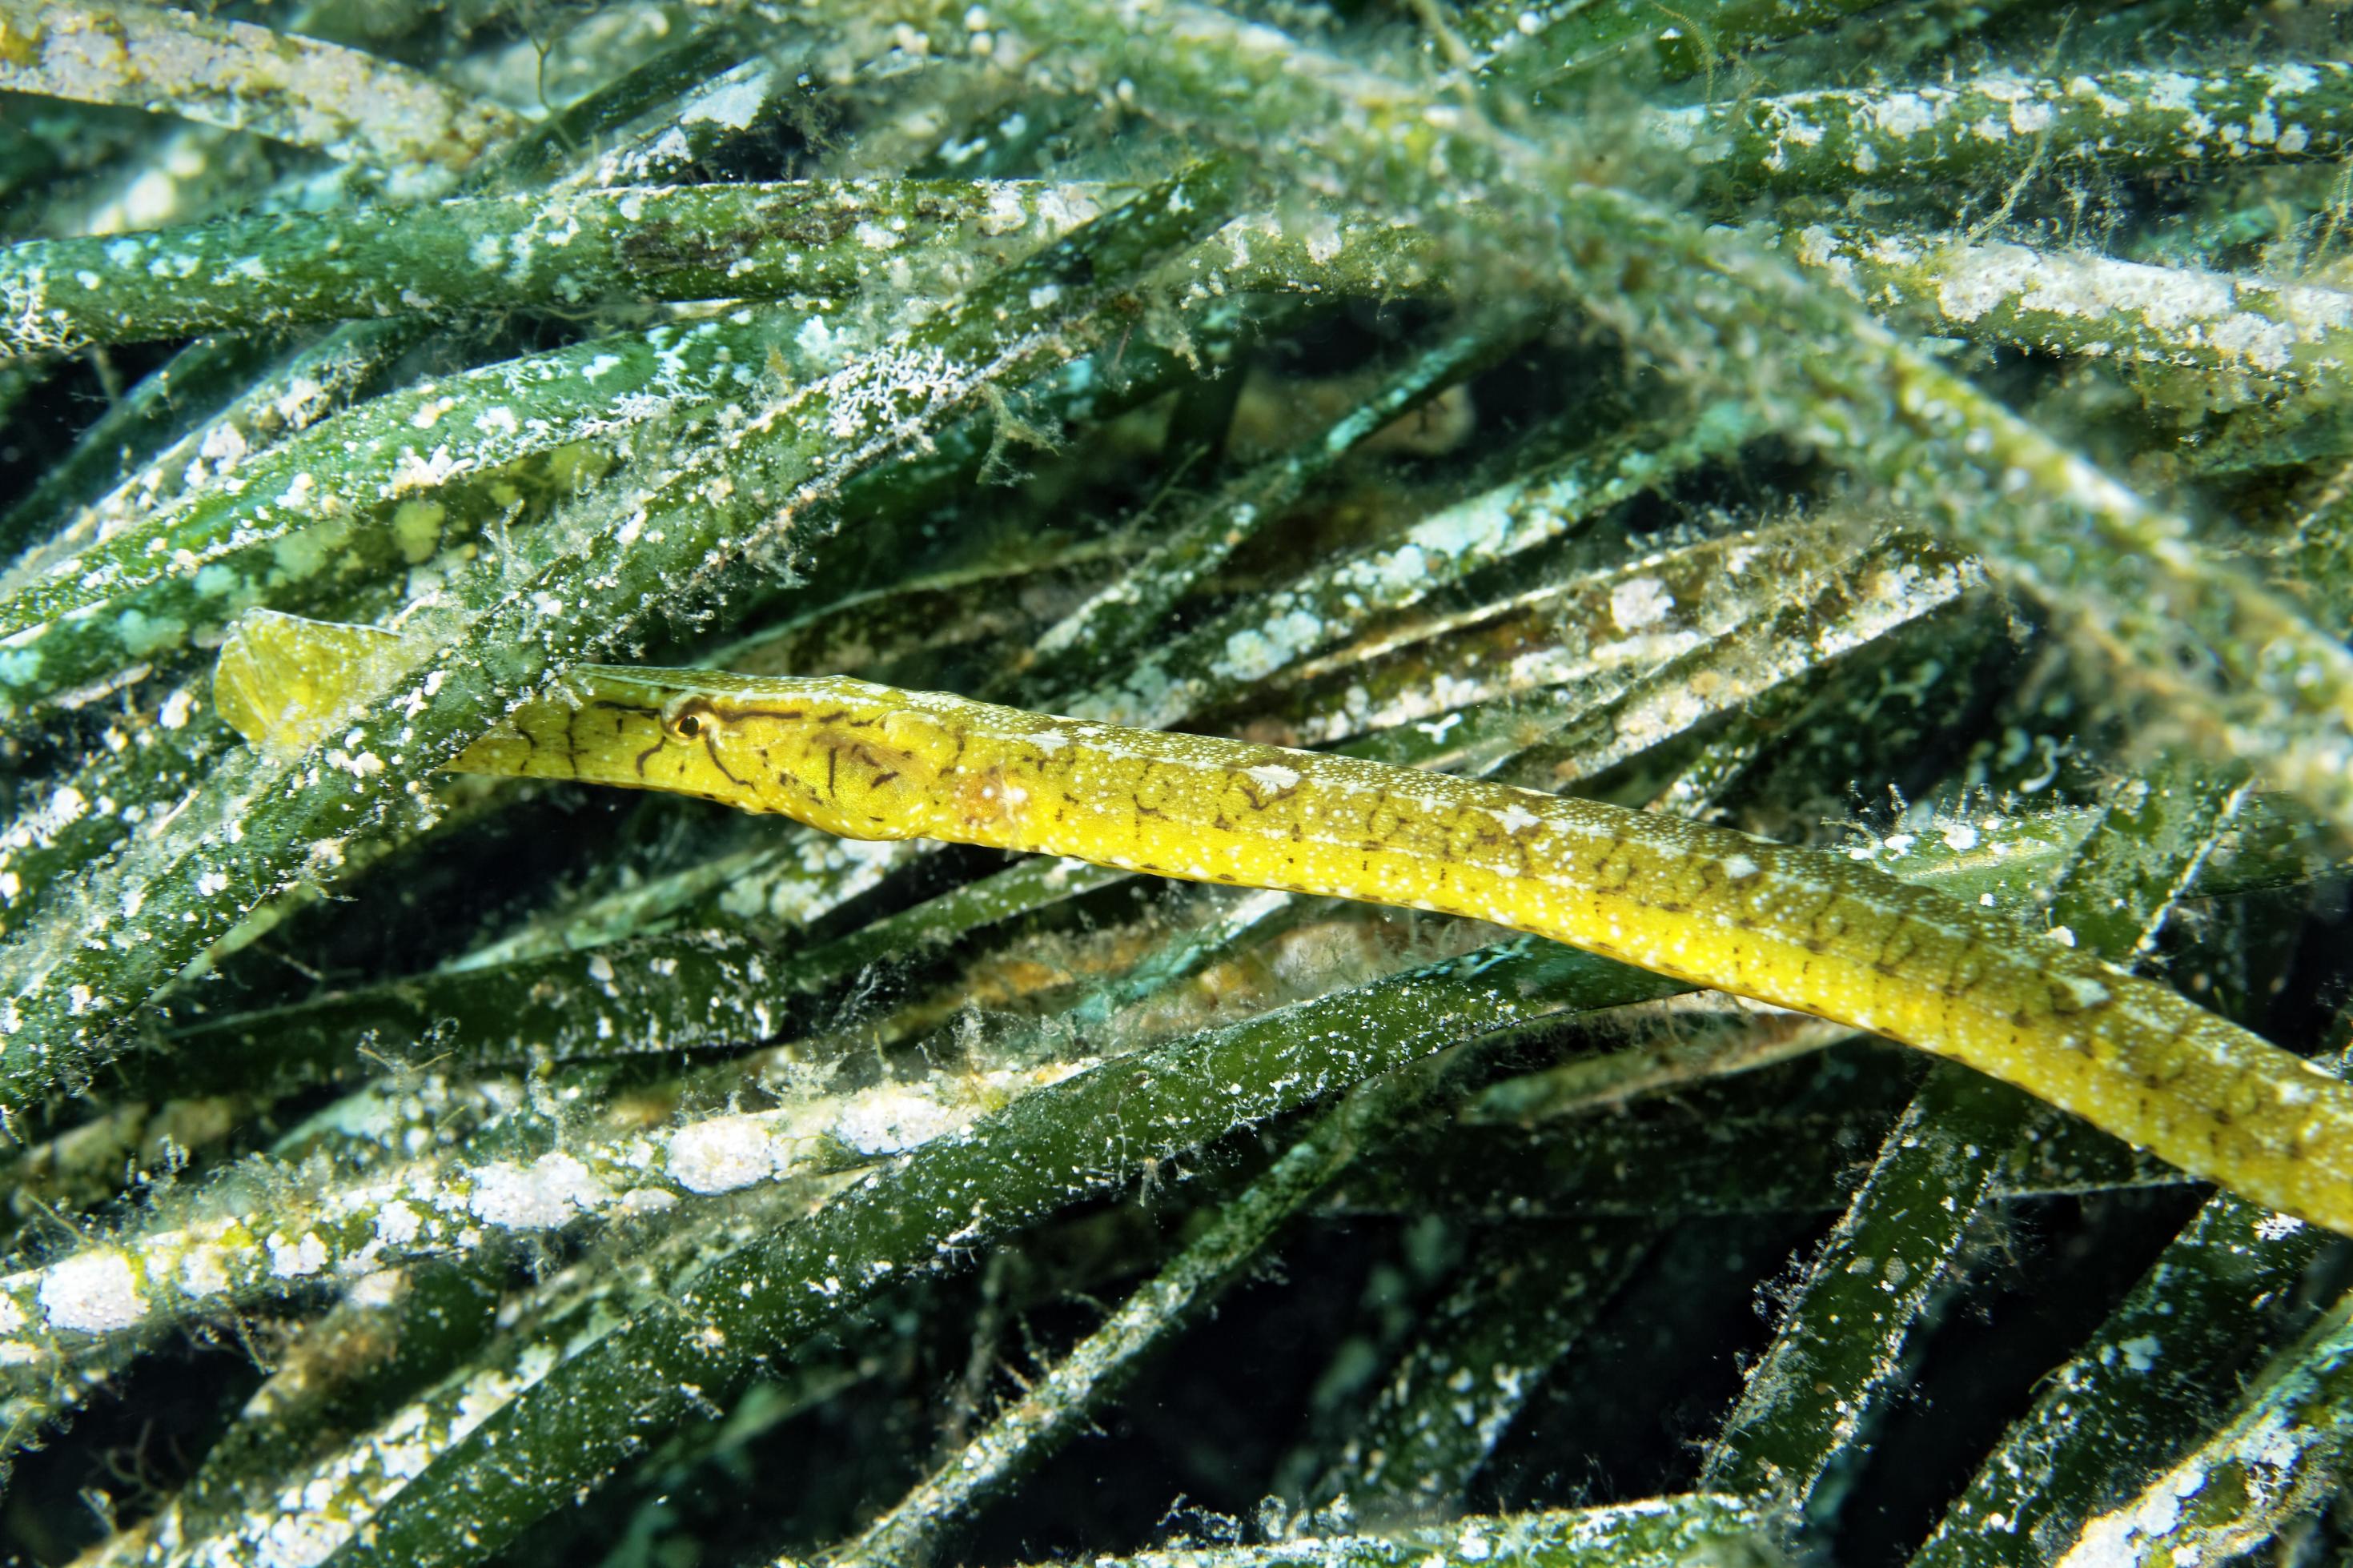 Unterwasserfoto einer Grasnadel zwischen Seegrashalmen. Diese lange und dünne grünliche Fischart ist perfekt an diese Umgebung angepasst.